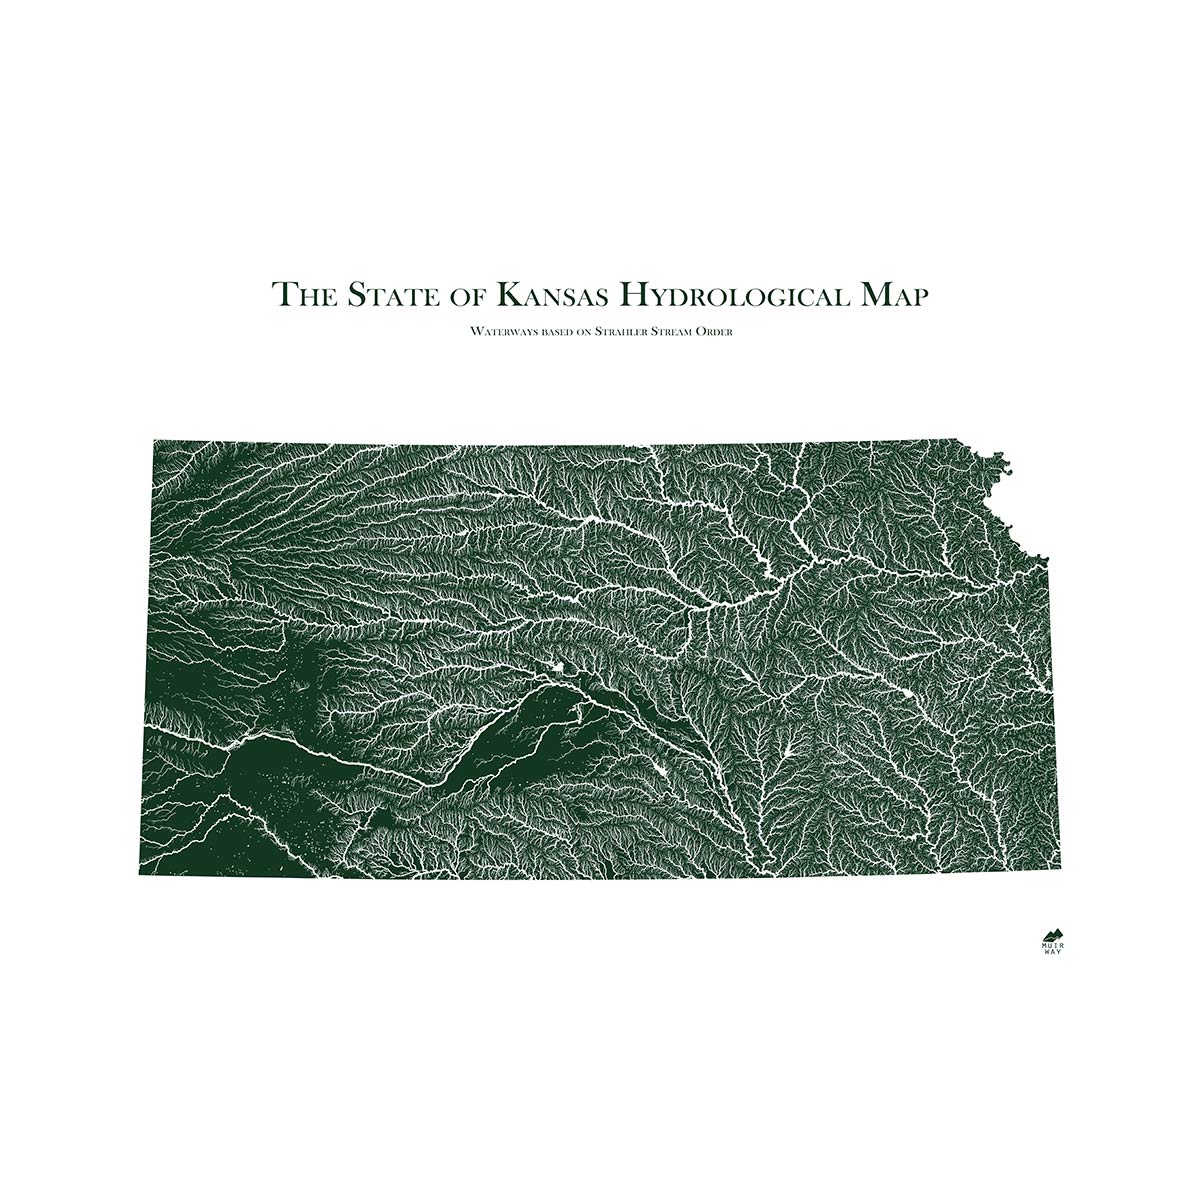 Kansas Rivers Map